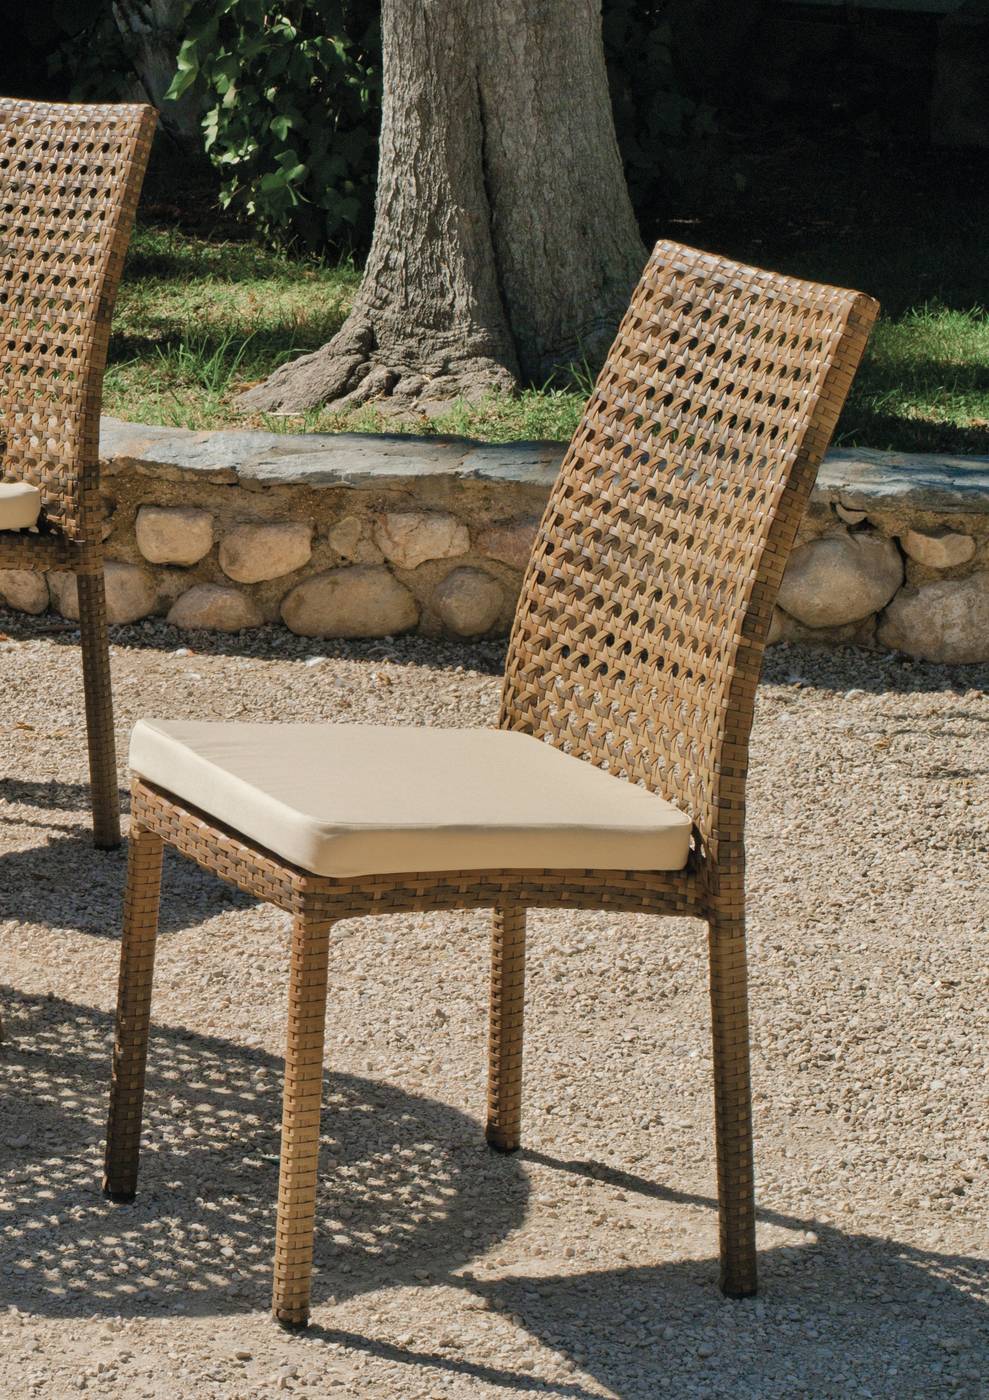 Set Médula Luxe San Remo-180/6 - Conjunto médula sintética color ratán envejecido: 1 mesa comedor 180 + 6 sillas + cojines.